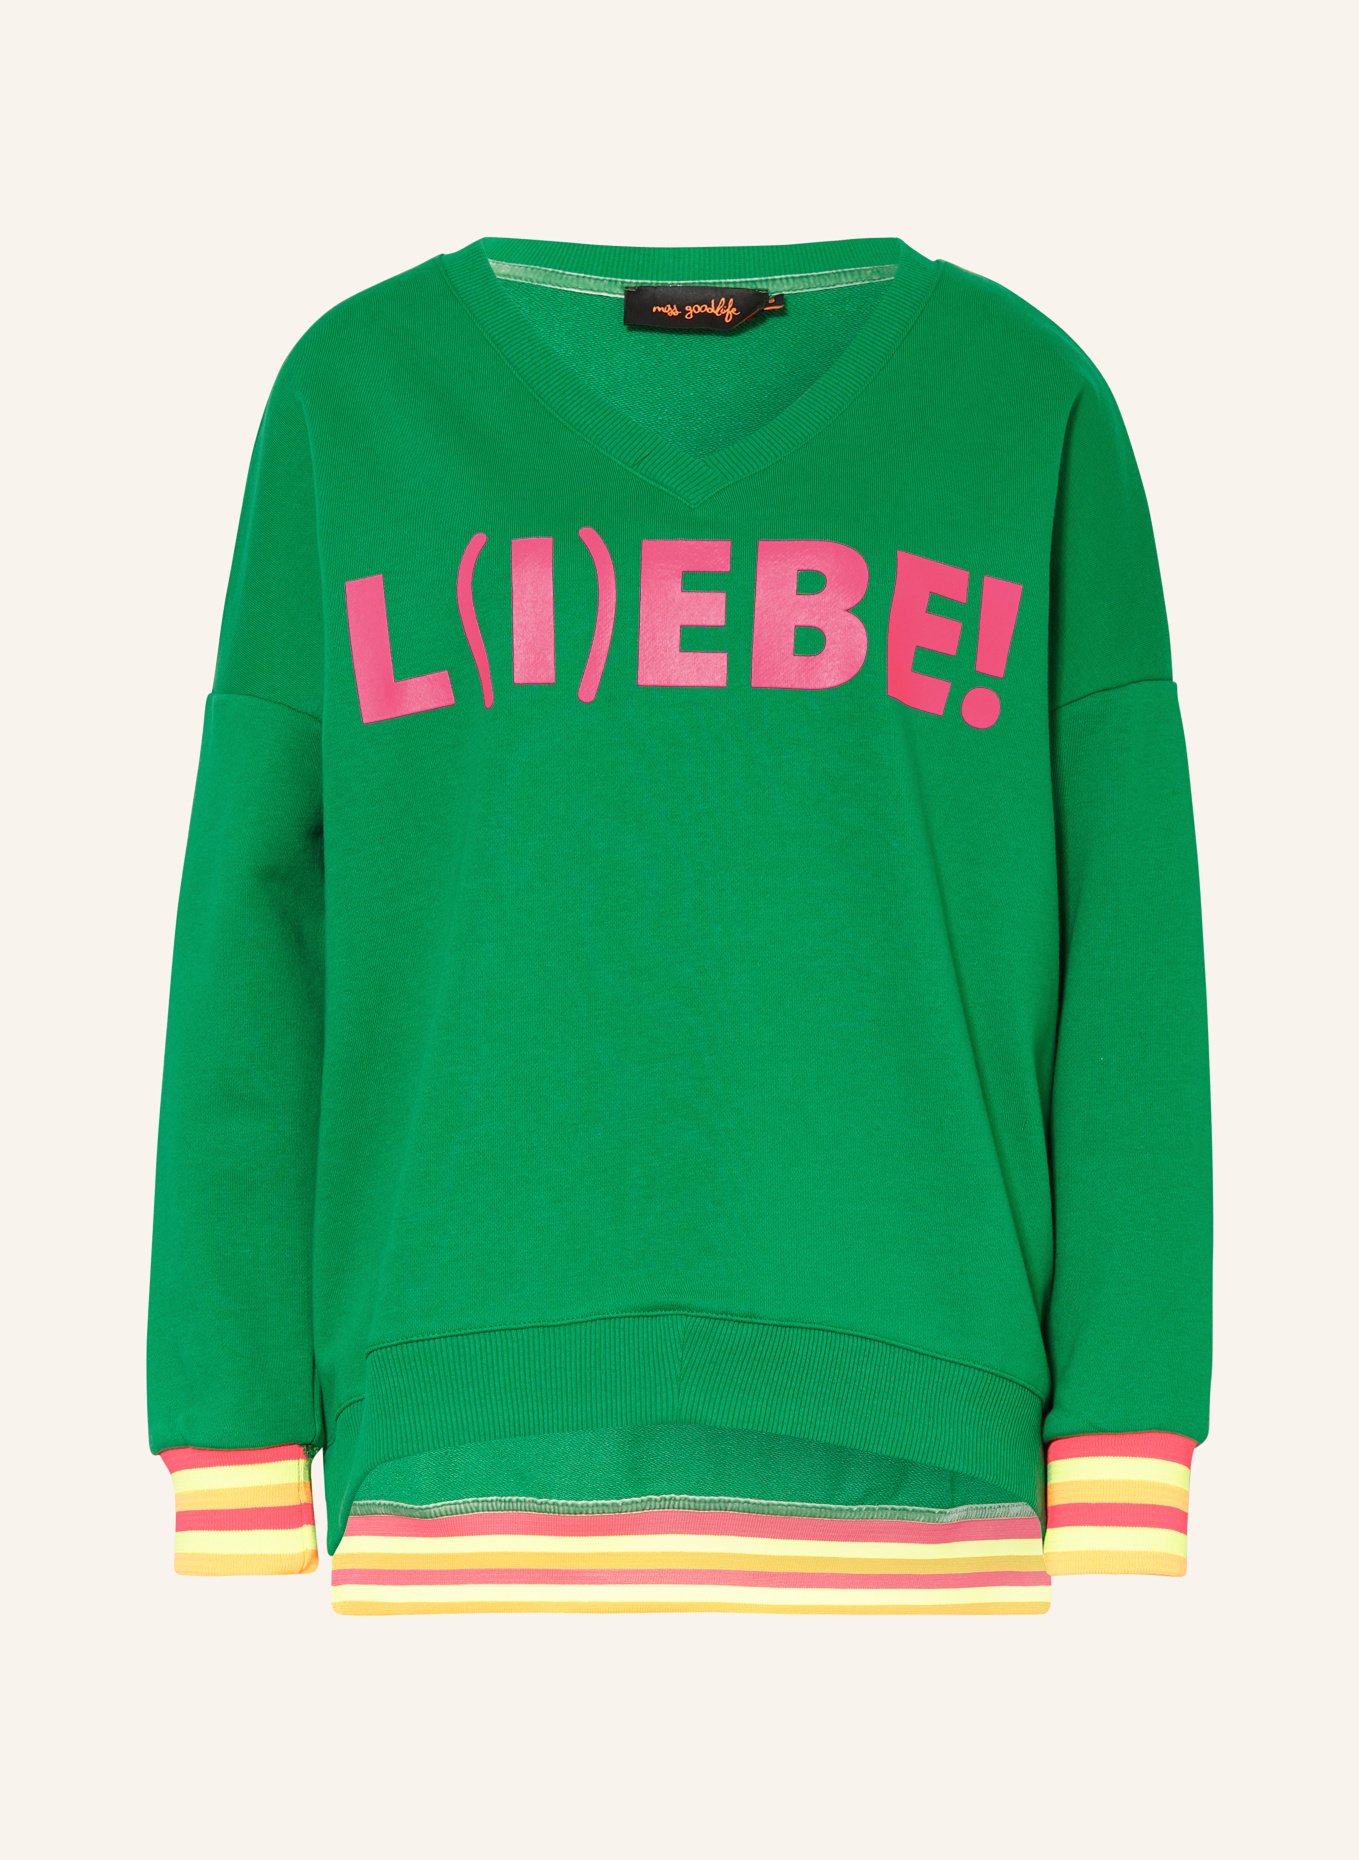 miss goodlife Sweatshirt, Color: GREEN/ NEON PINK/ NEON ORANGE (Image 1)